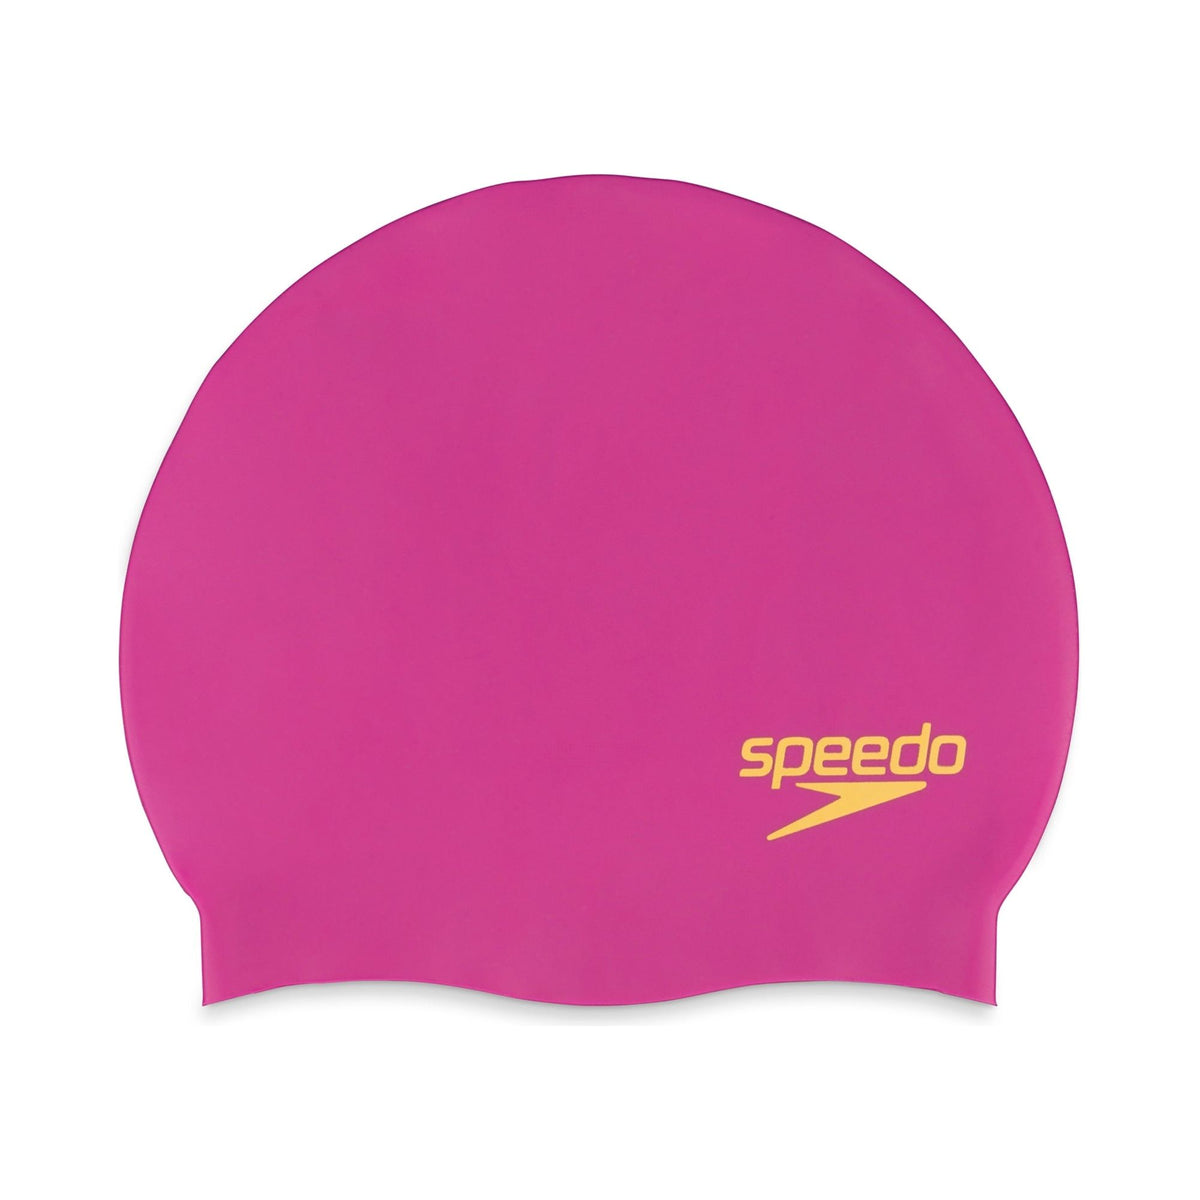 Speedo Silicone Swim Cap at